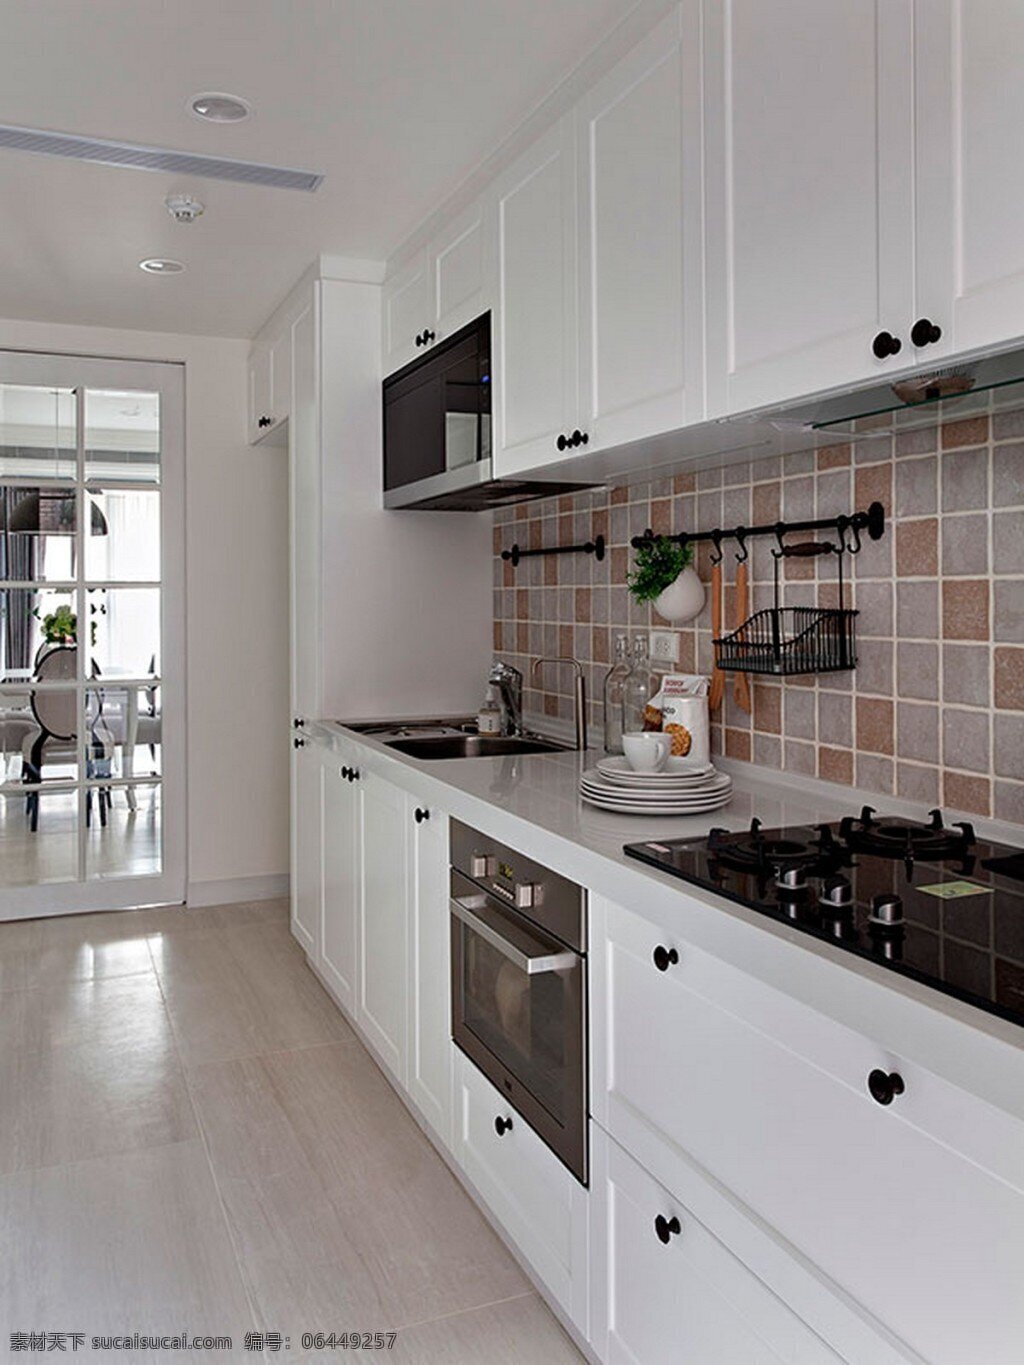 现代 简约 风 室内设计 厨房 灶台 效果图 料理台 白色 调 格子瓷砖 吊柜 家装